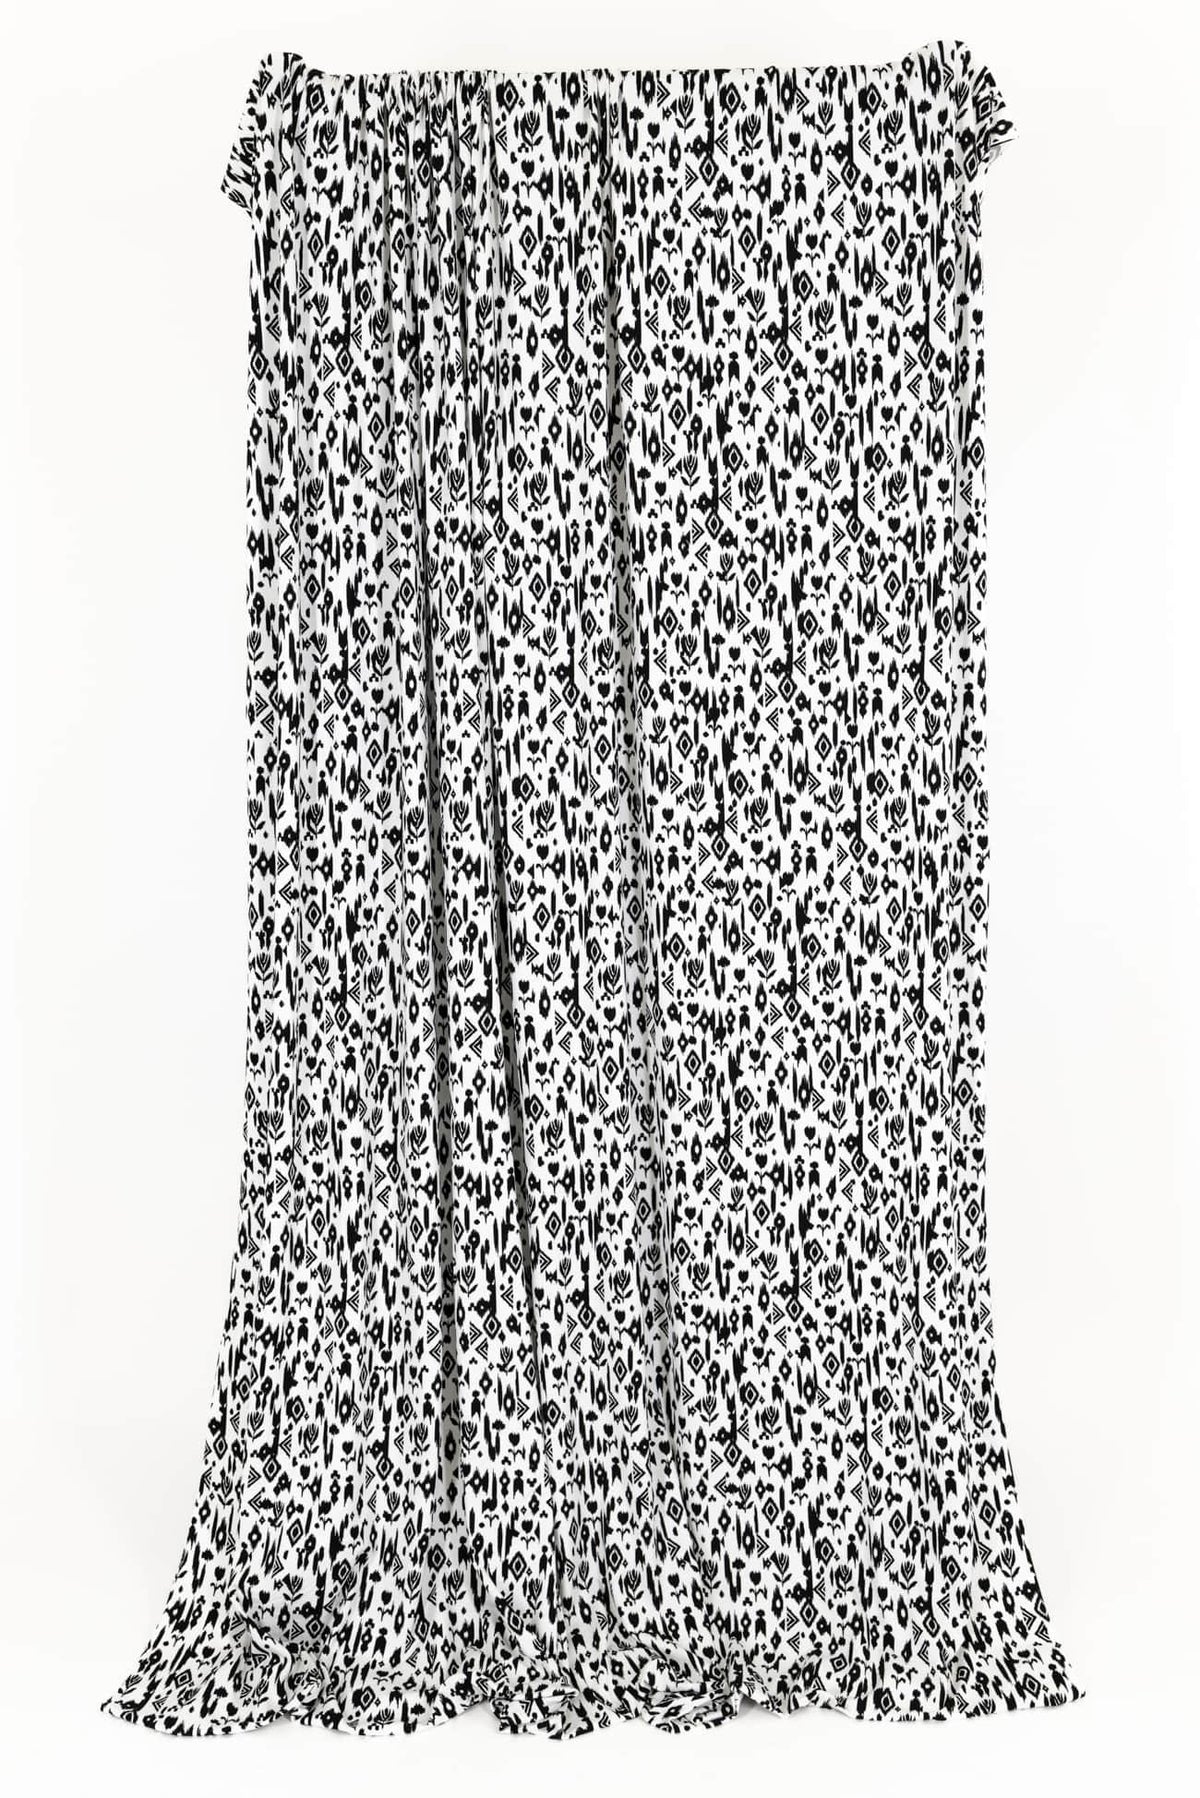 Casablanca Viscose Knit - Marcy Tilton Fabrics